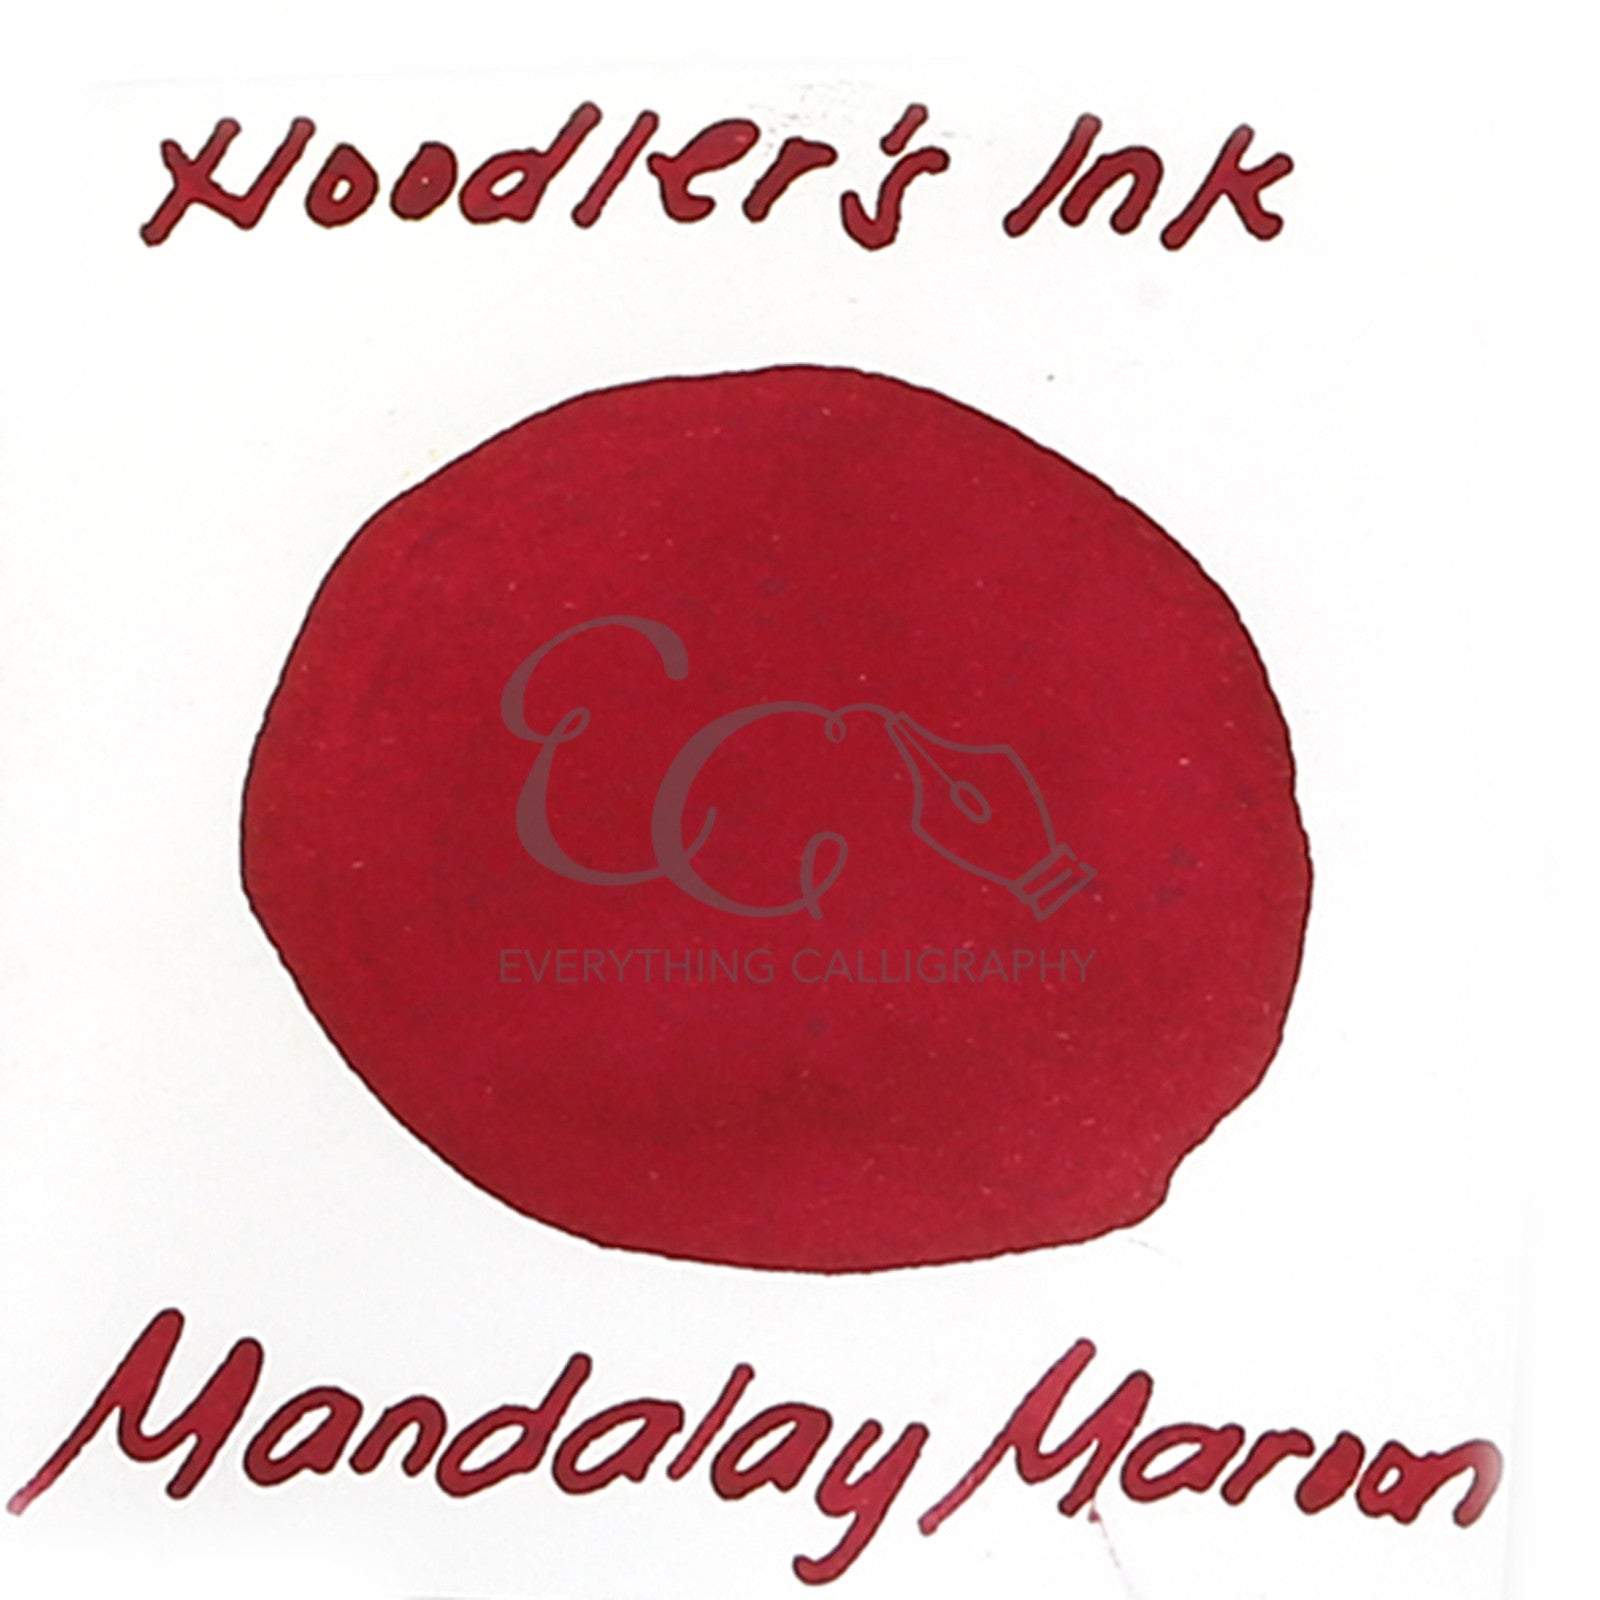 Noodler's 3oz Standard Inks